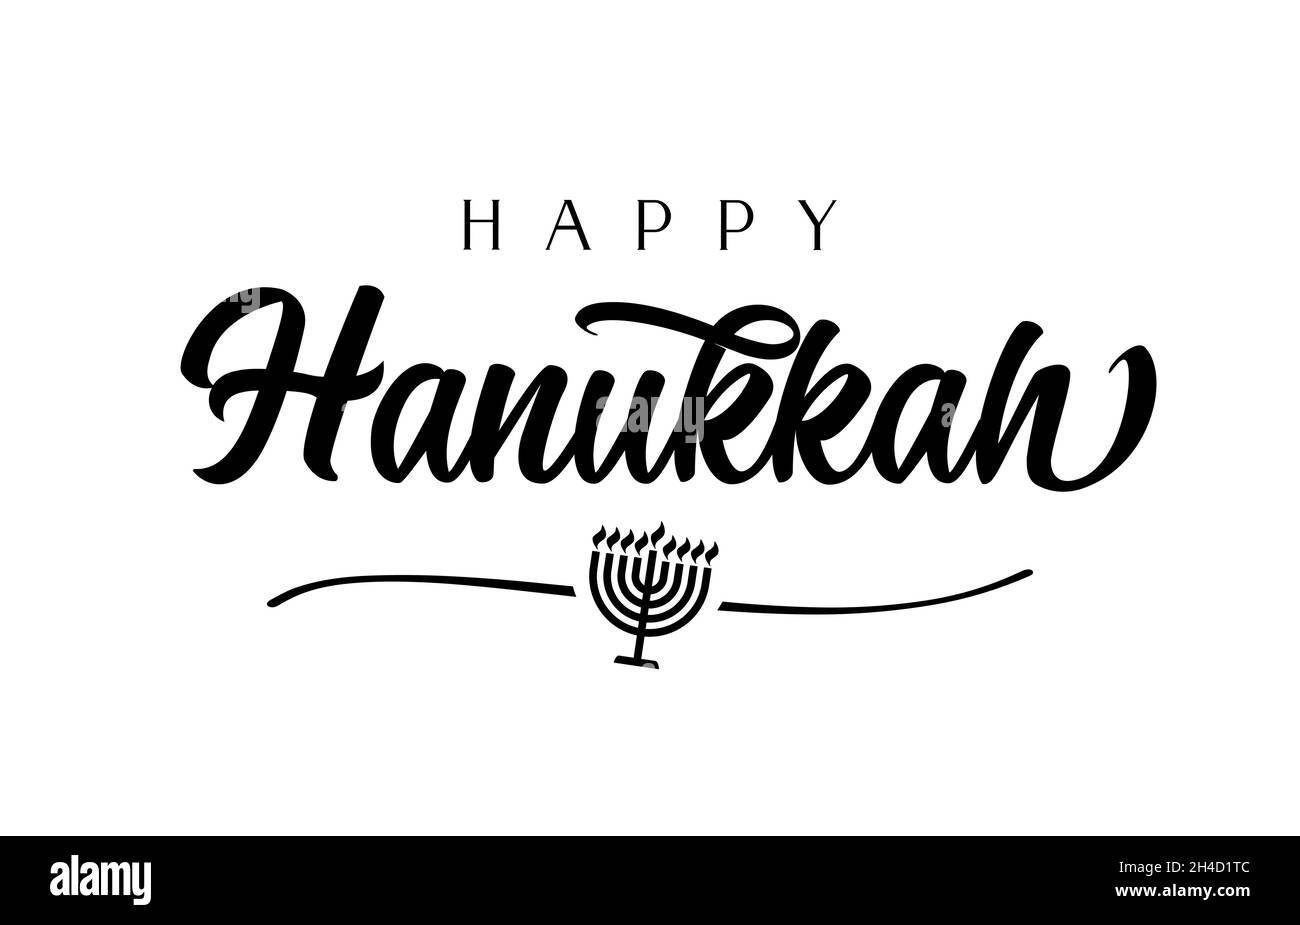 Happy Hanukka elegante Kalligraphie und Menorah. Vectror hanukka schwarzer Kandelaber-Ikone mit acht Zweigen und einer isolierten Linie auf weißem Hintergrund Stock Vektor